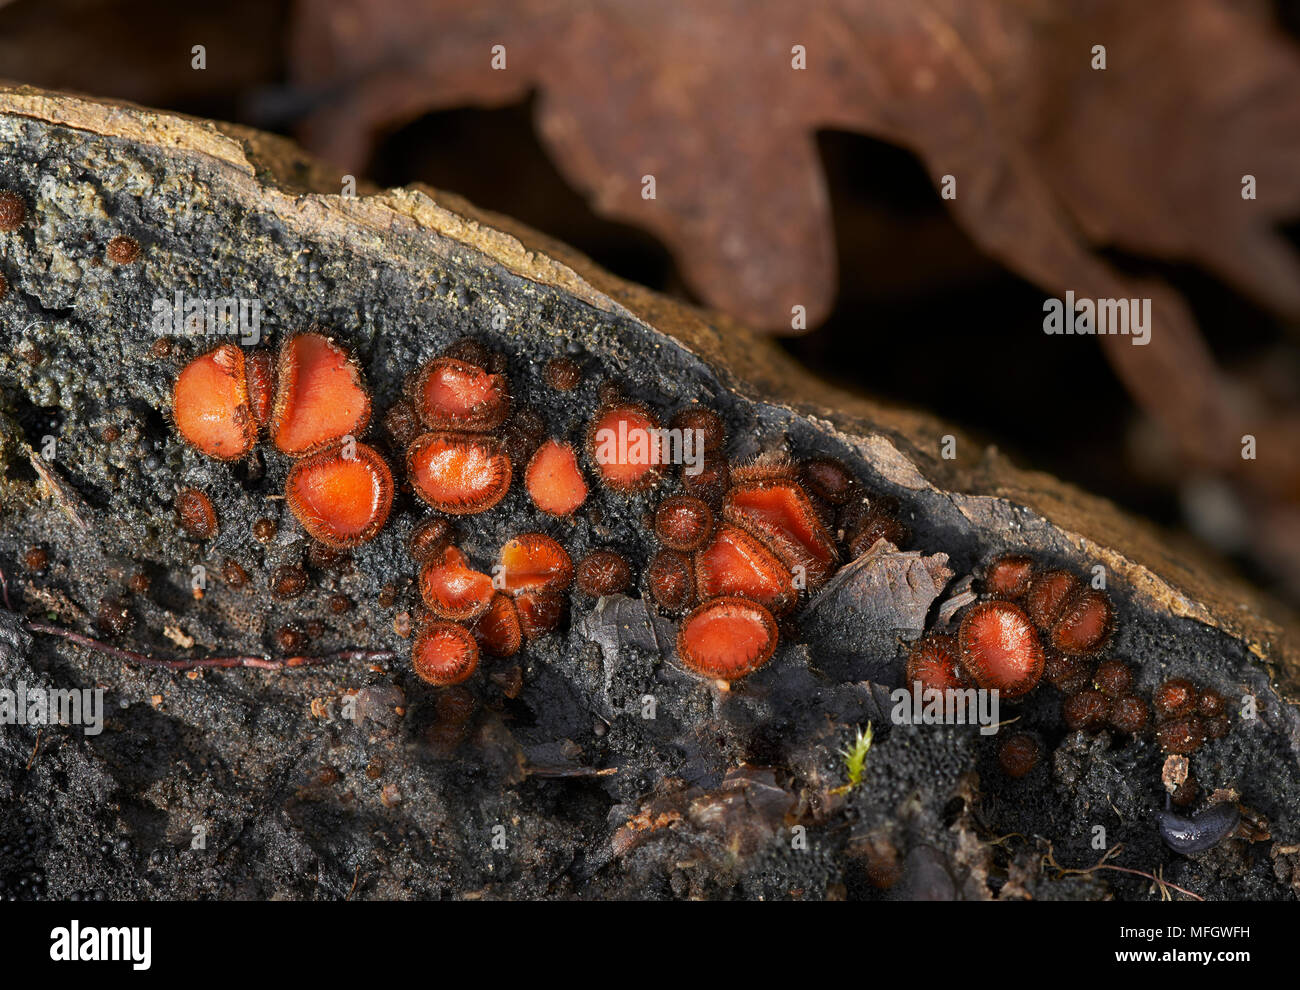 Champignon de cils (Scutellinia scutellata) Sussex, Engalnd humous, saprophytes sur sol humide et riche, humide des bois morts Banque D'Images